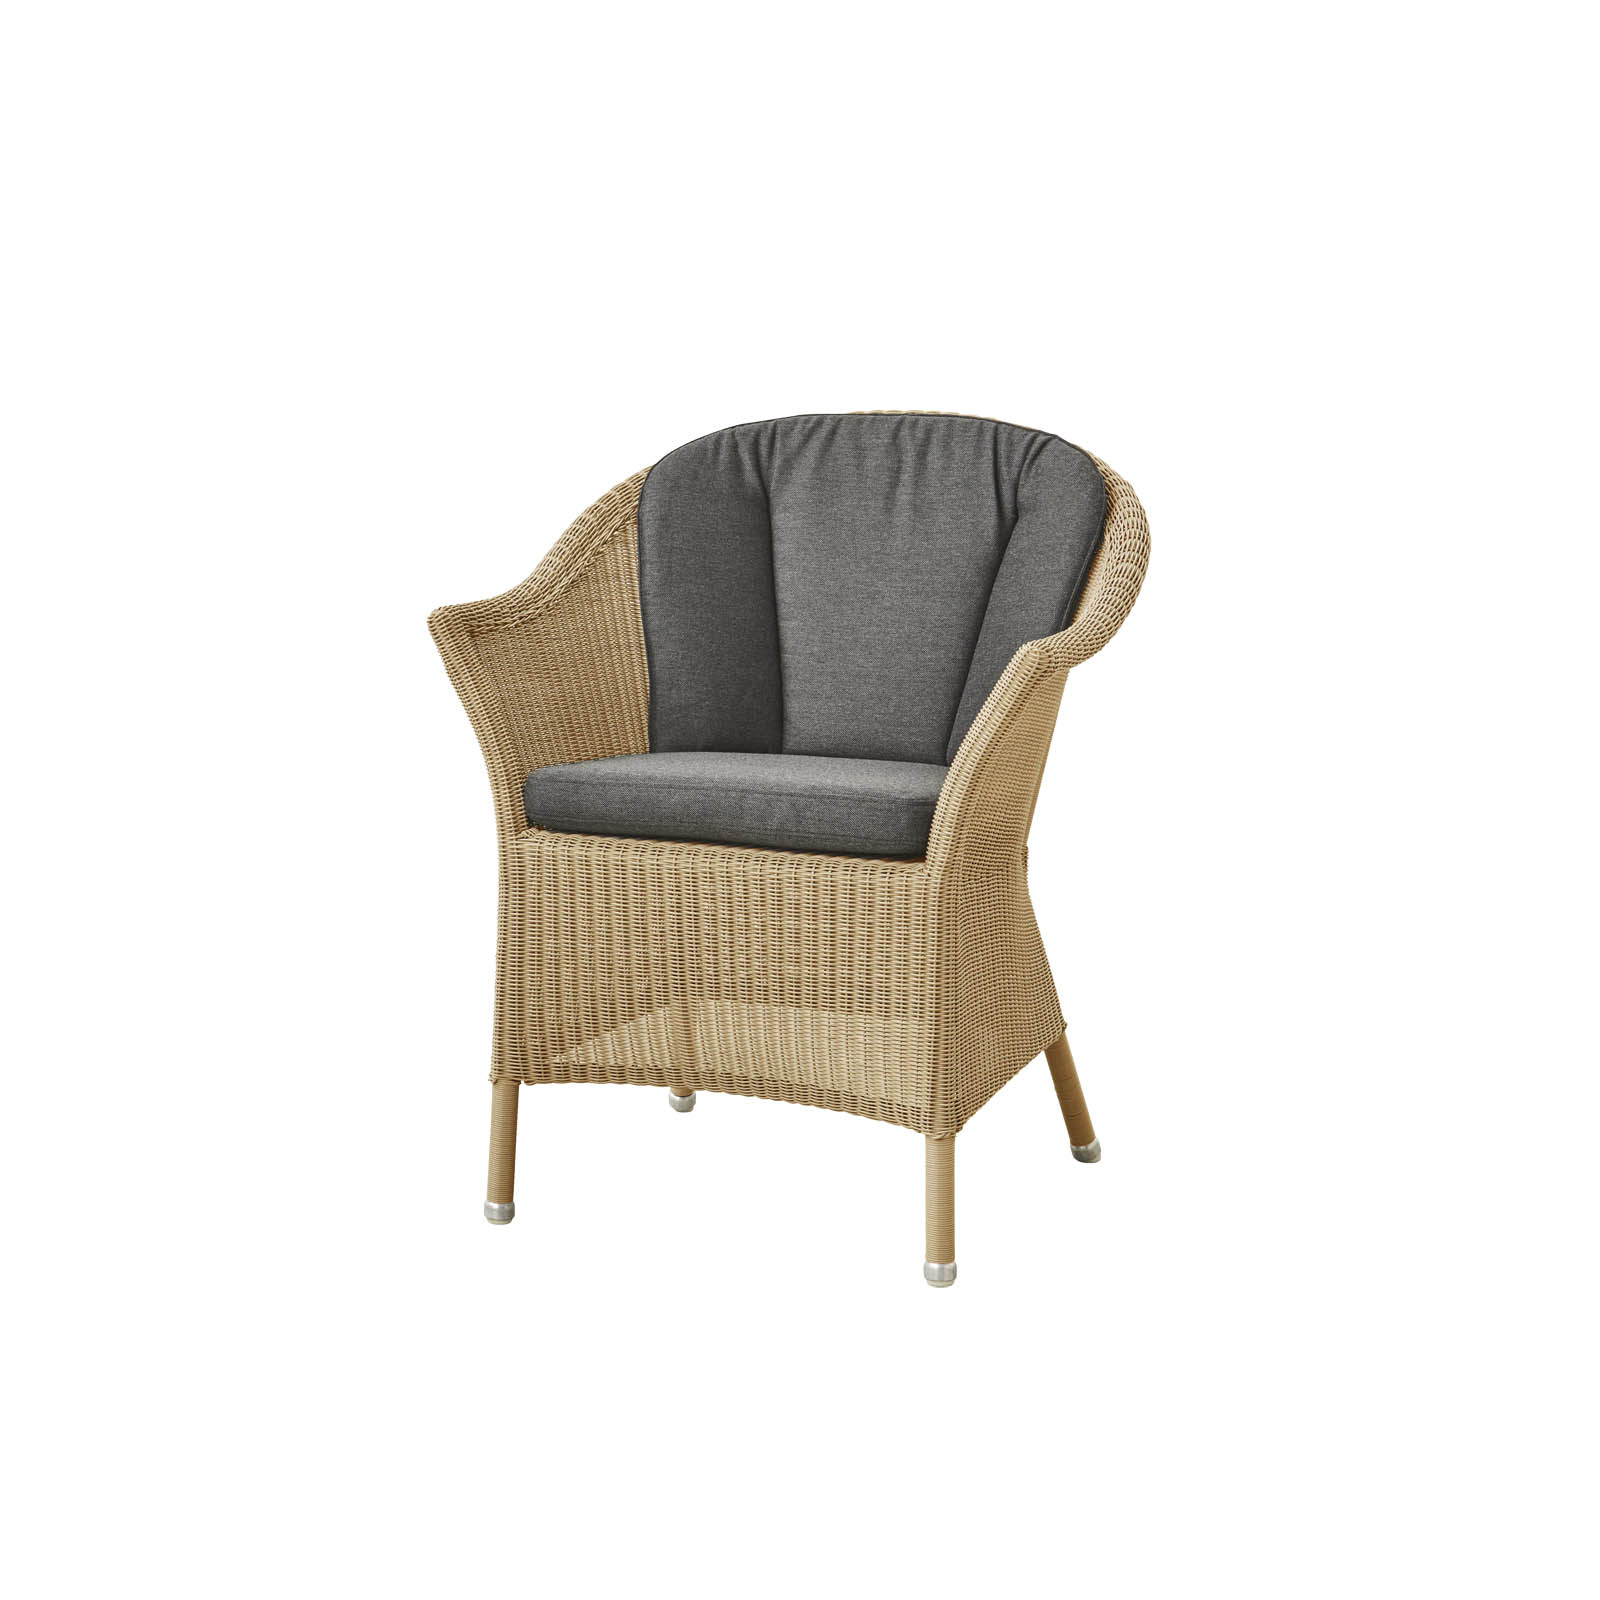 Lansing Stuhl aus Cane-line Weave in Natural mit Kissen aus Cane-line Natté in Black und Kissen aus Cane-line Natté in Black